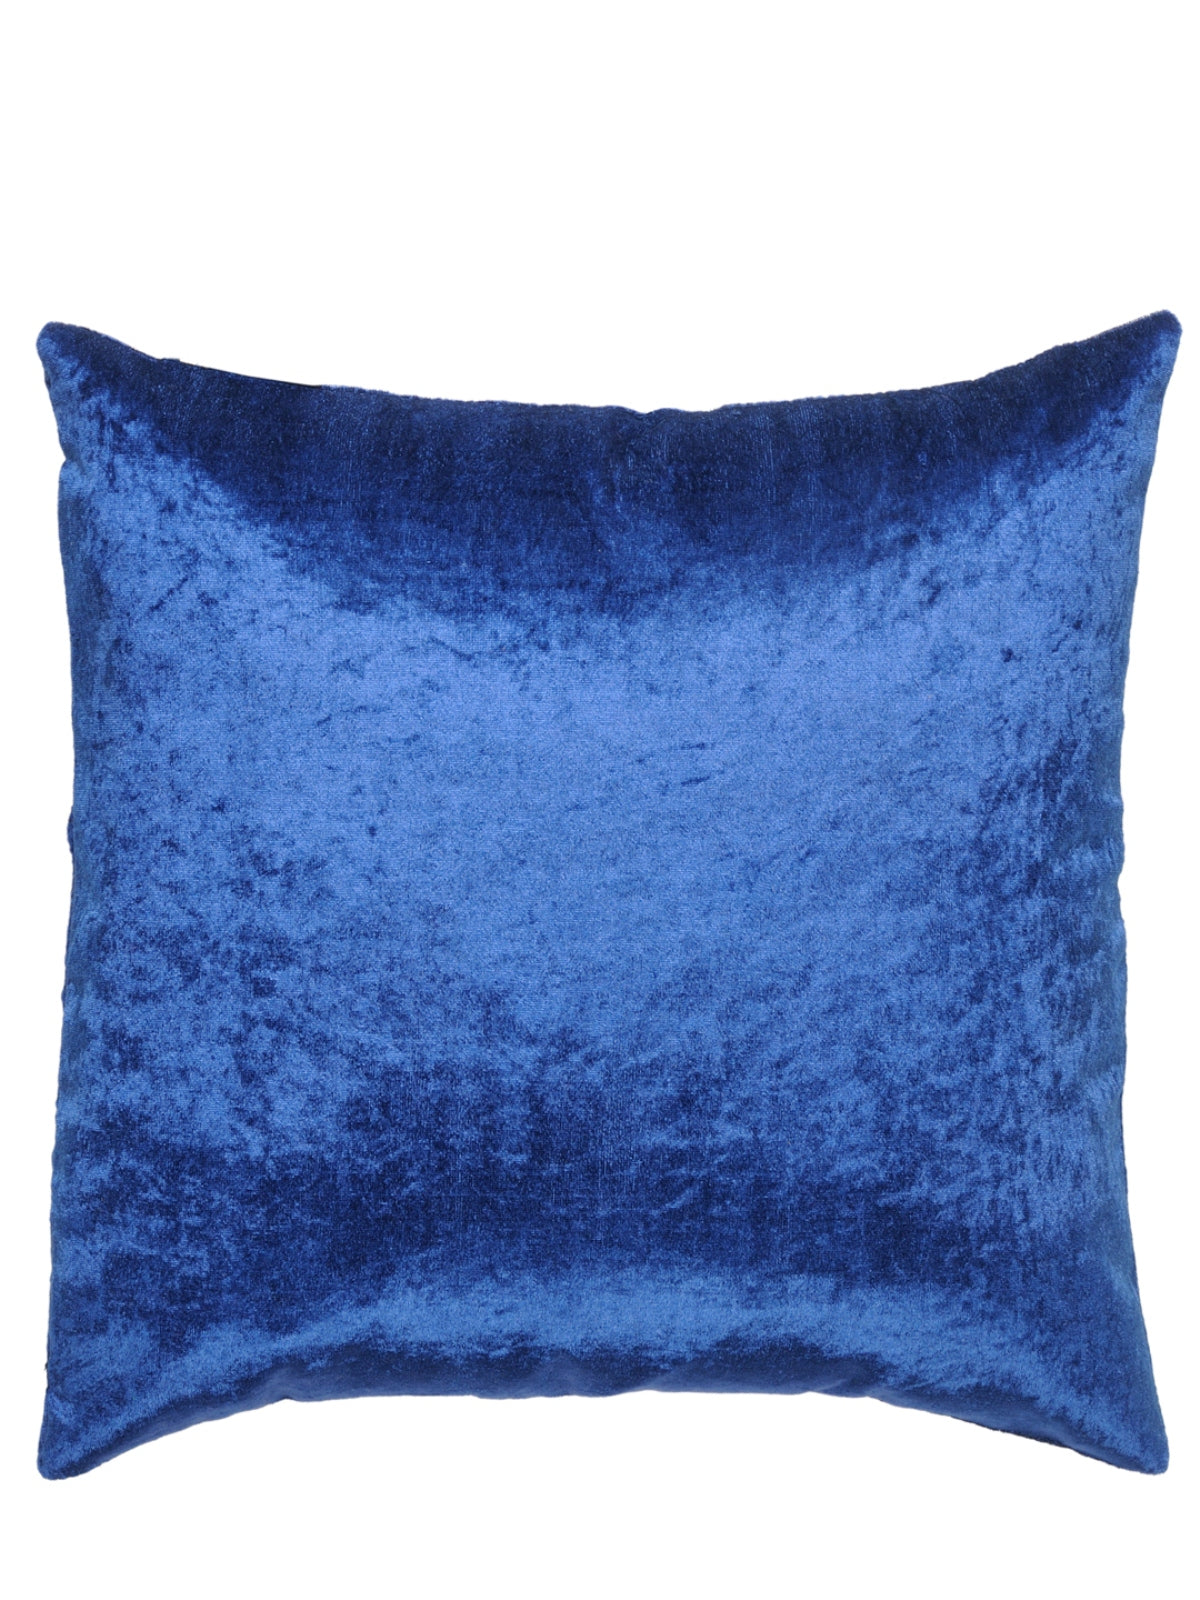 Velvet Plain Cushion Cover, 16 x 16 Inch, Set of 5, Blue